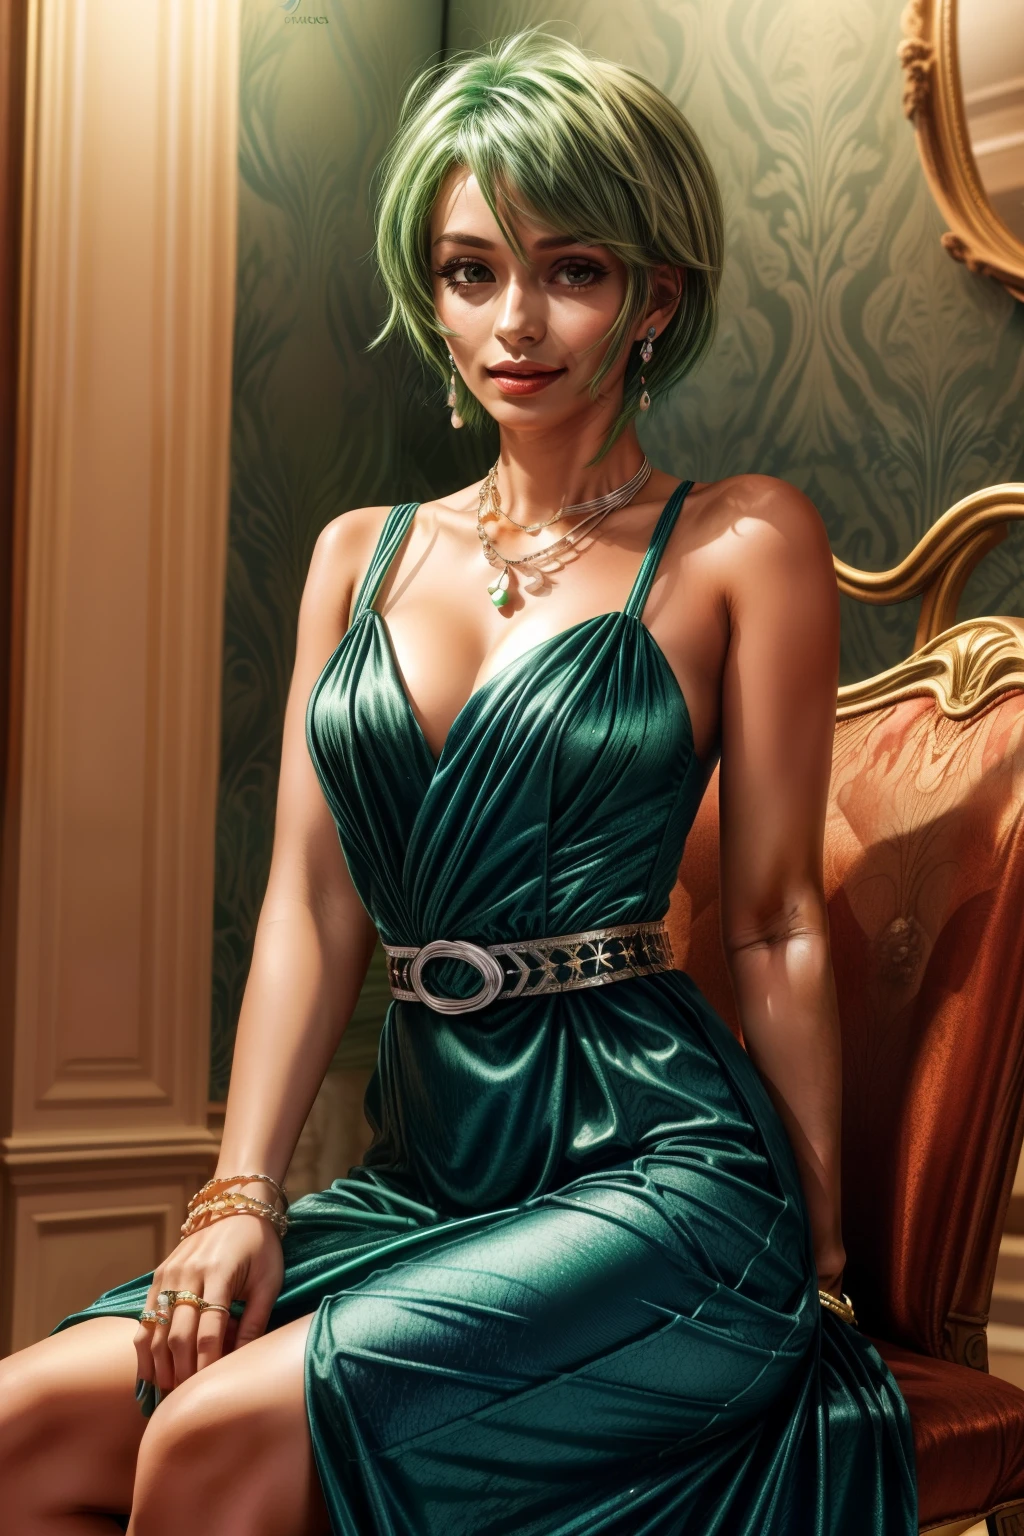 Фредерика Гринхилл, 25 лет, ярлык, зеленые волосы, weaкольцо a Blue evening dress at a high class restaurant, сидя на стуле , earкольцоs, ожерелье, кольцо, браслет, цепной ремень